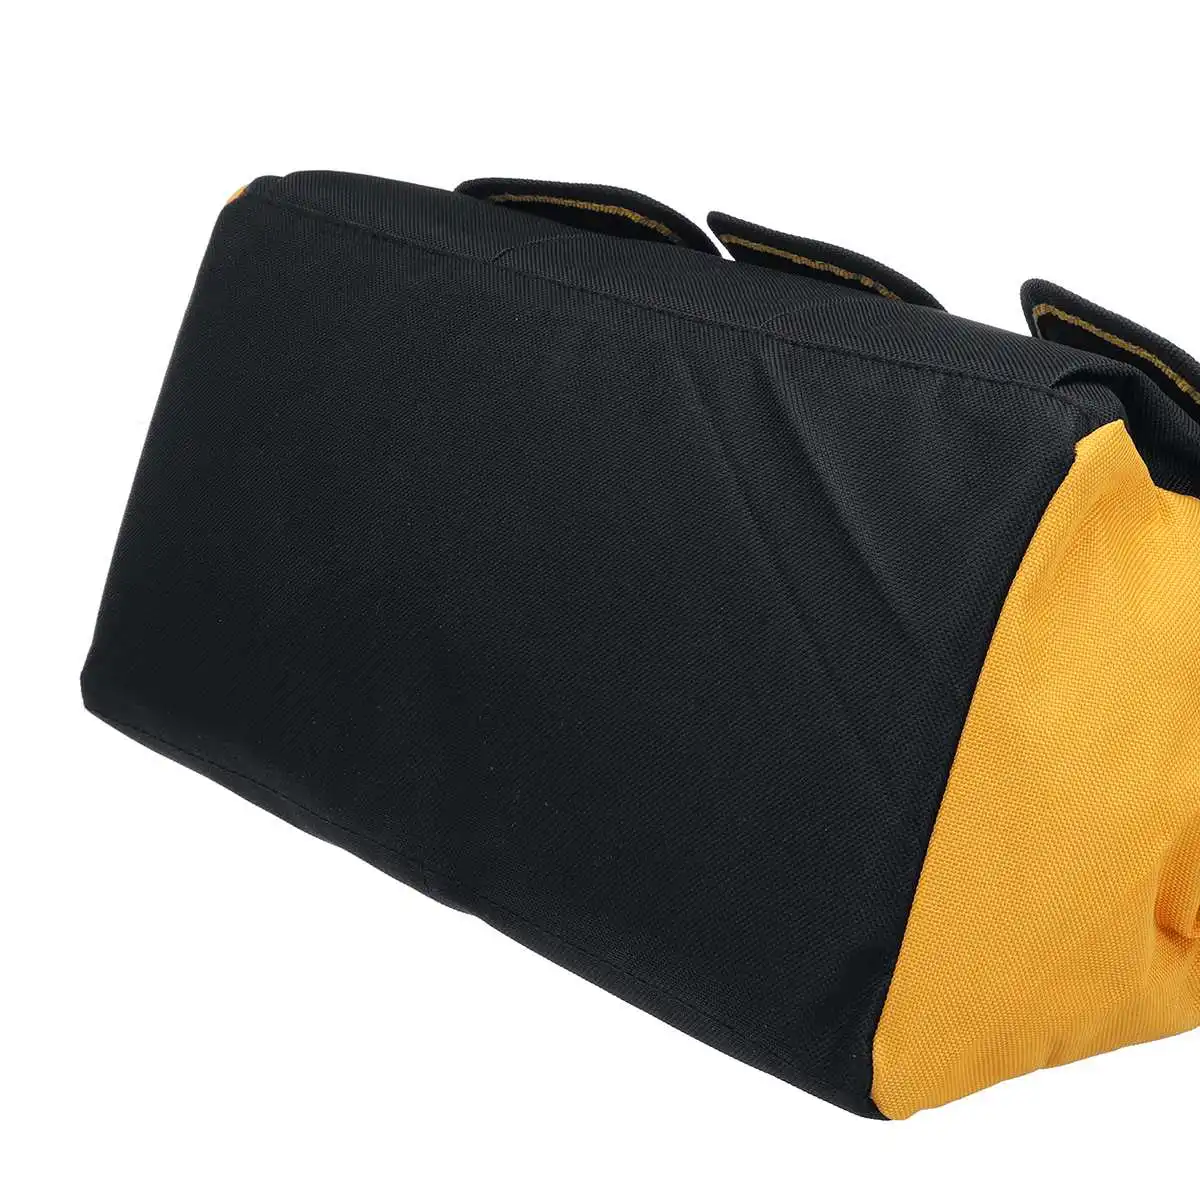 13 дюймов сумка для инструментов Ремонт Холст Большая оксфордская сумка через плечо чехол Портативная сумка для электрика отвертки дрель